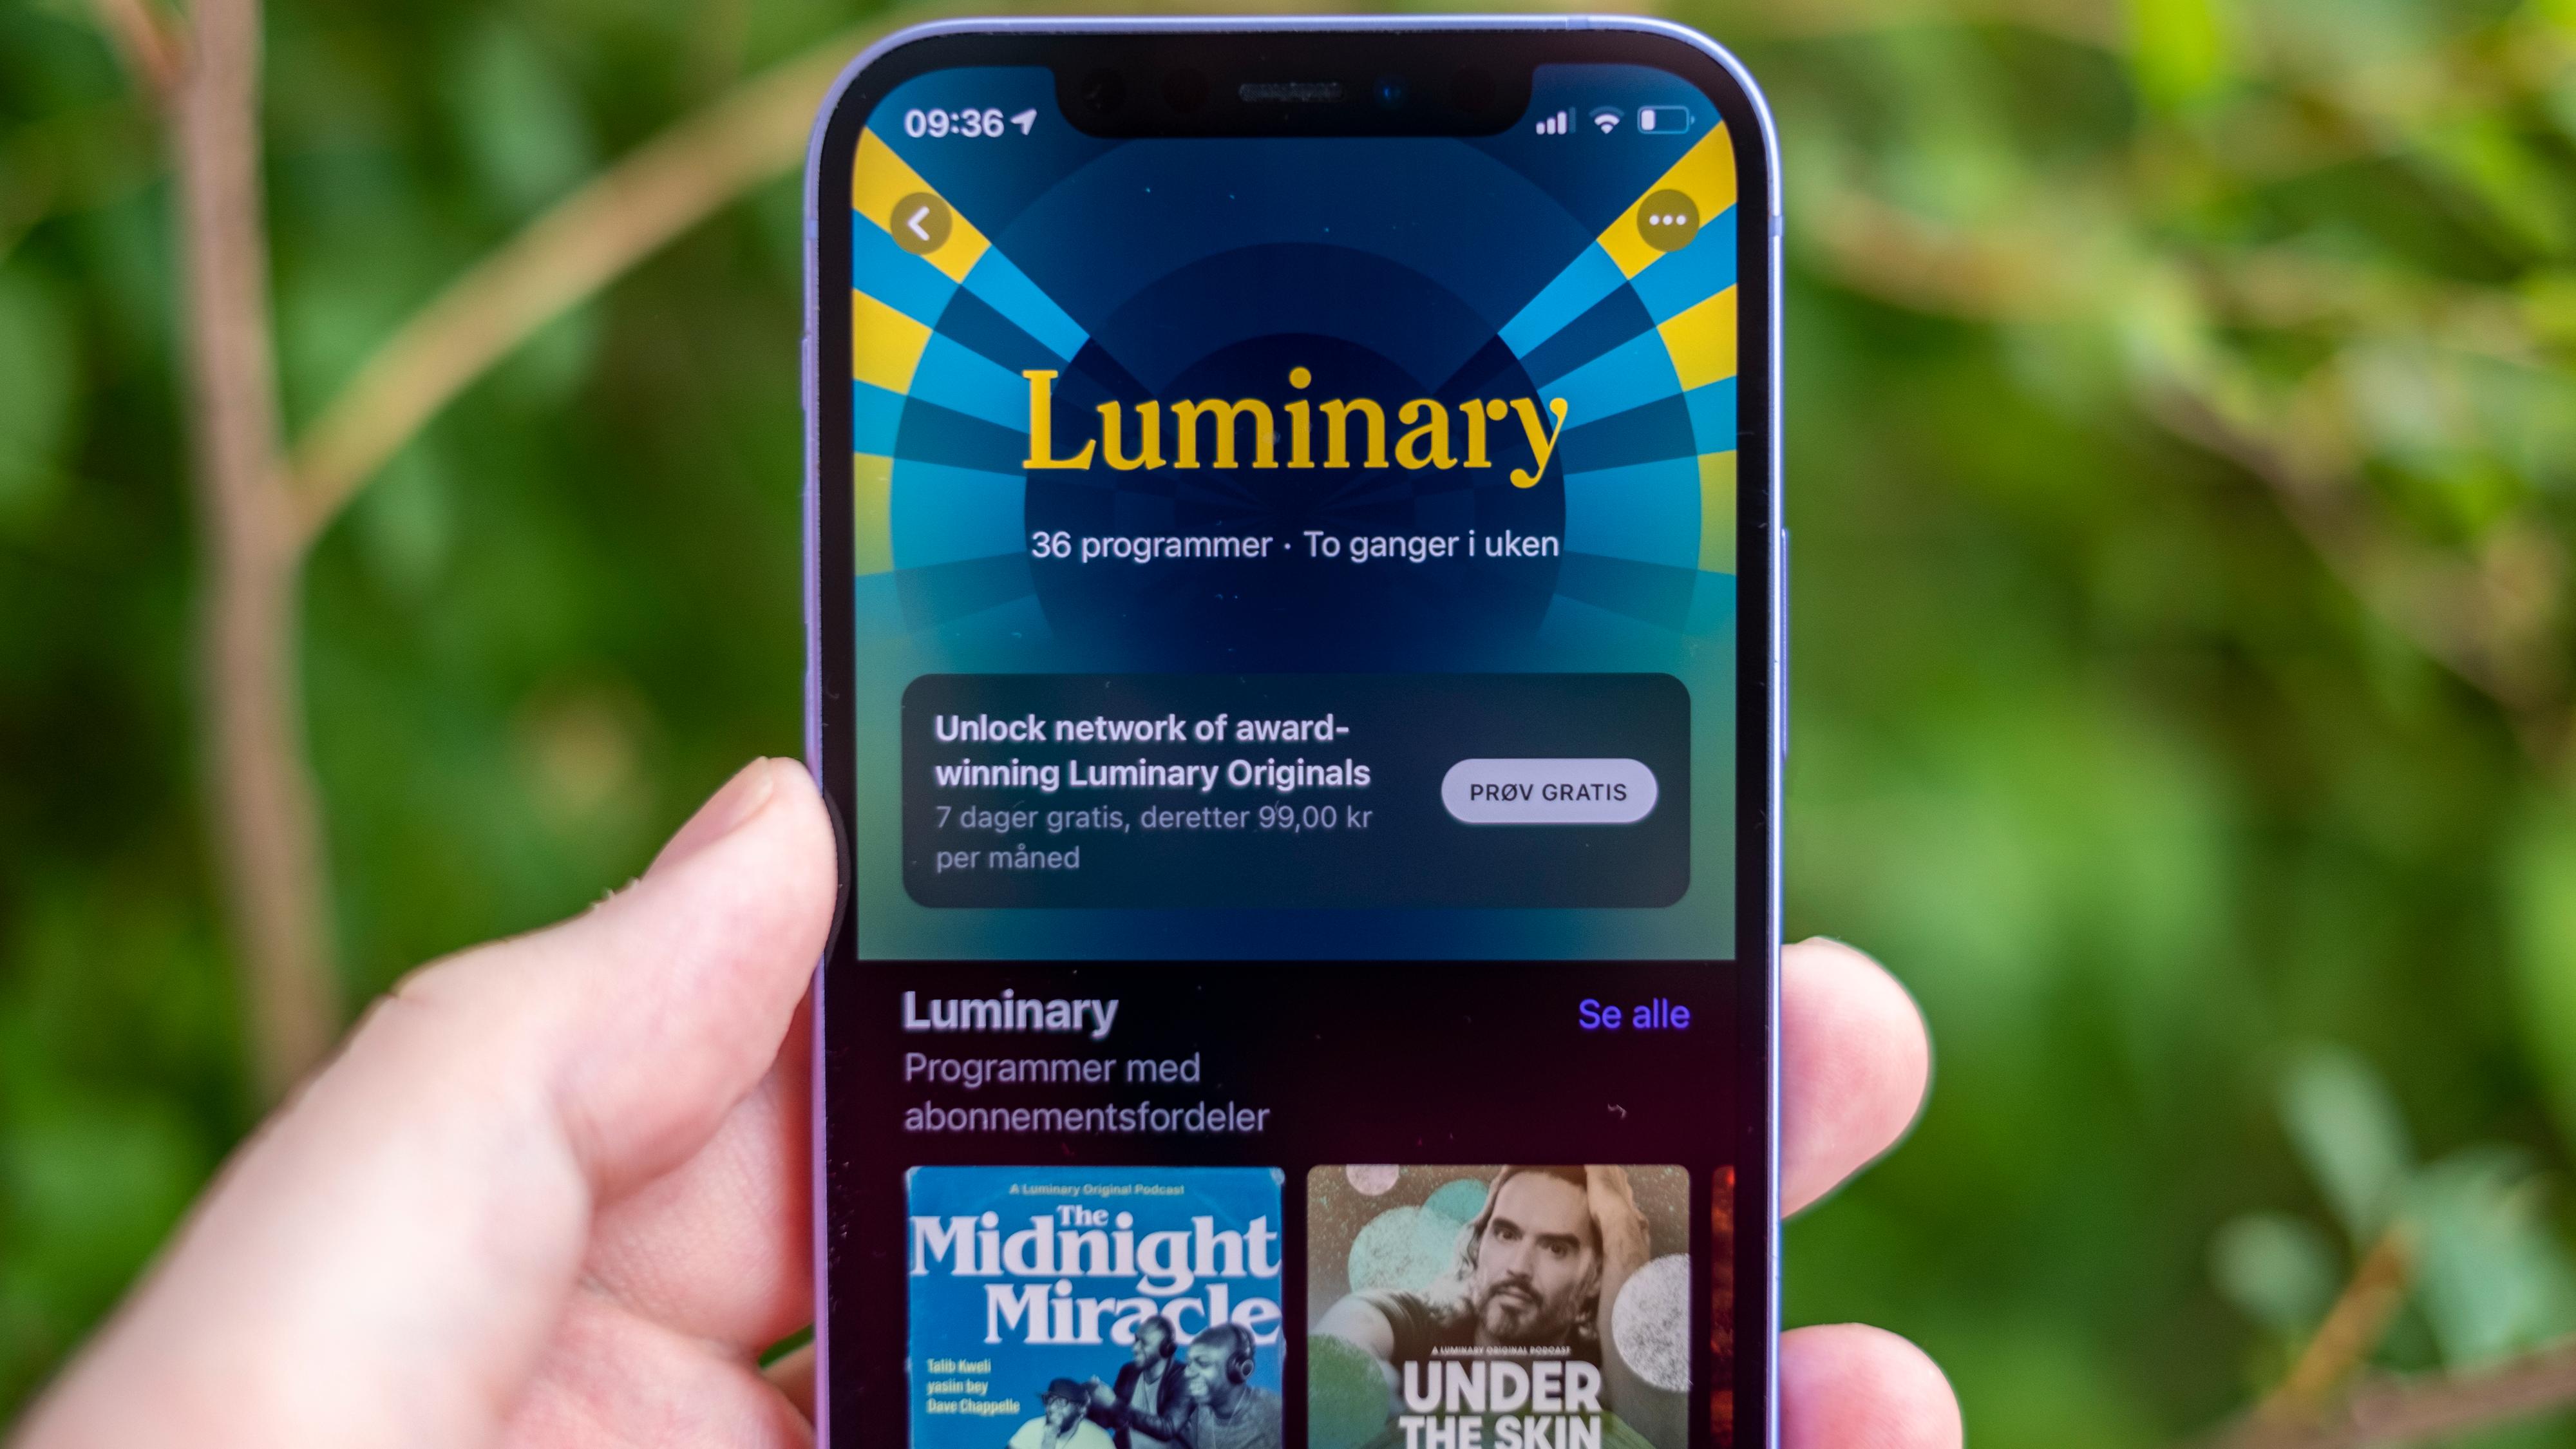 Luminary-podcasten er blant de første til å ta i bruk de nye betalte abonnementstjenestene hos Apple - der kan du blant annet høre fra Dave Chapelle, Talib Kweli og Mos Def.